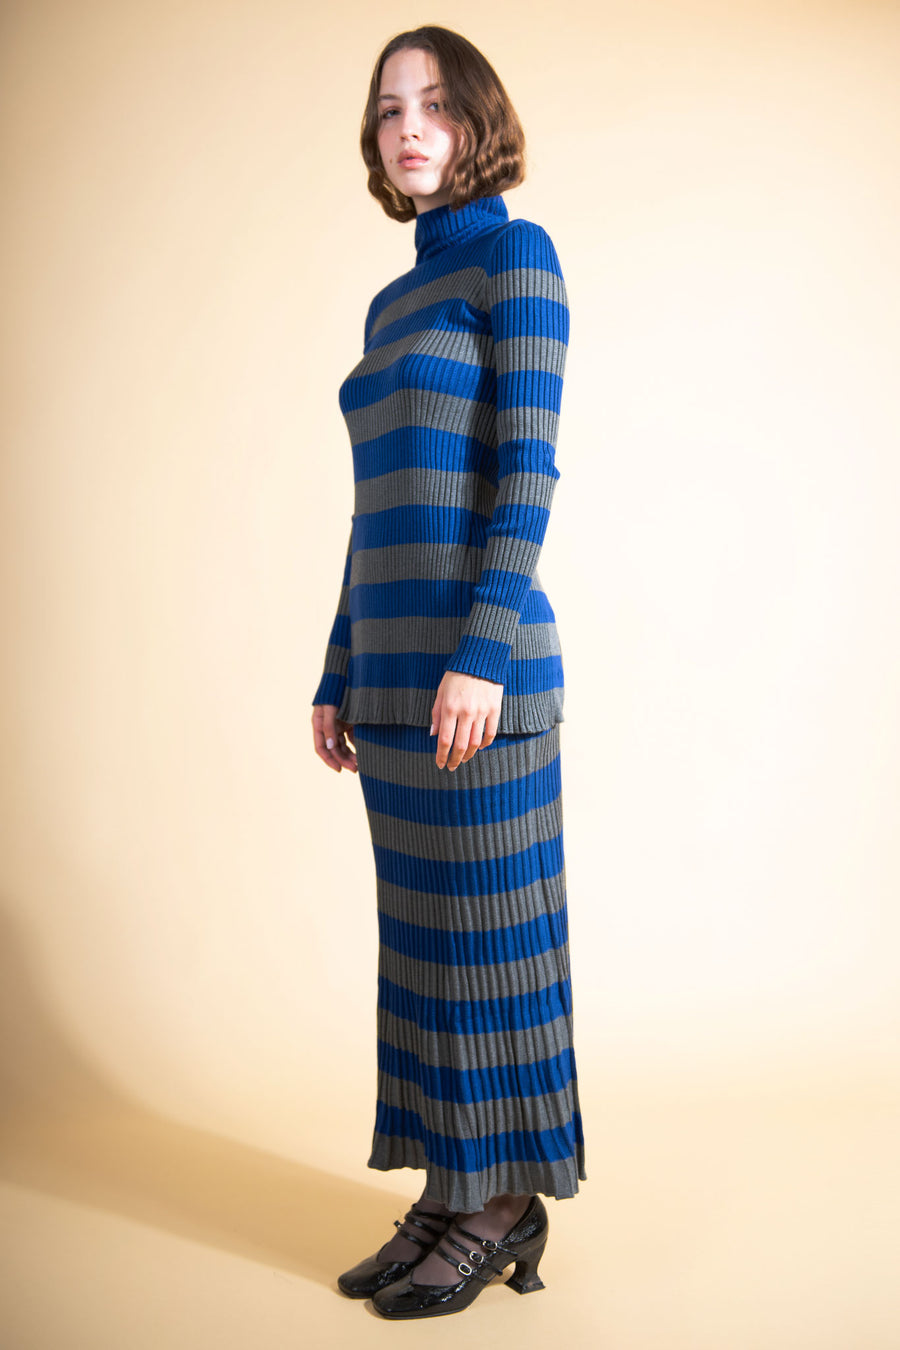 BATSHEVA - Mia Sweater in Blue & Grey Stripe